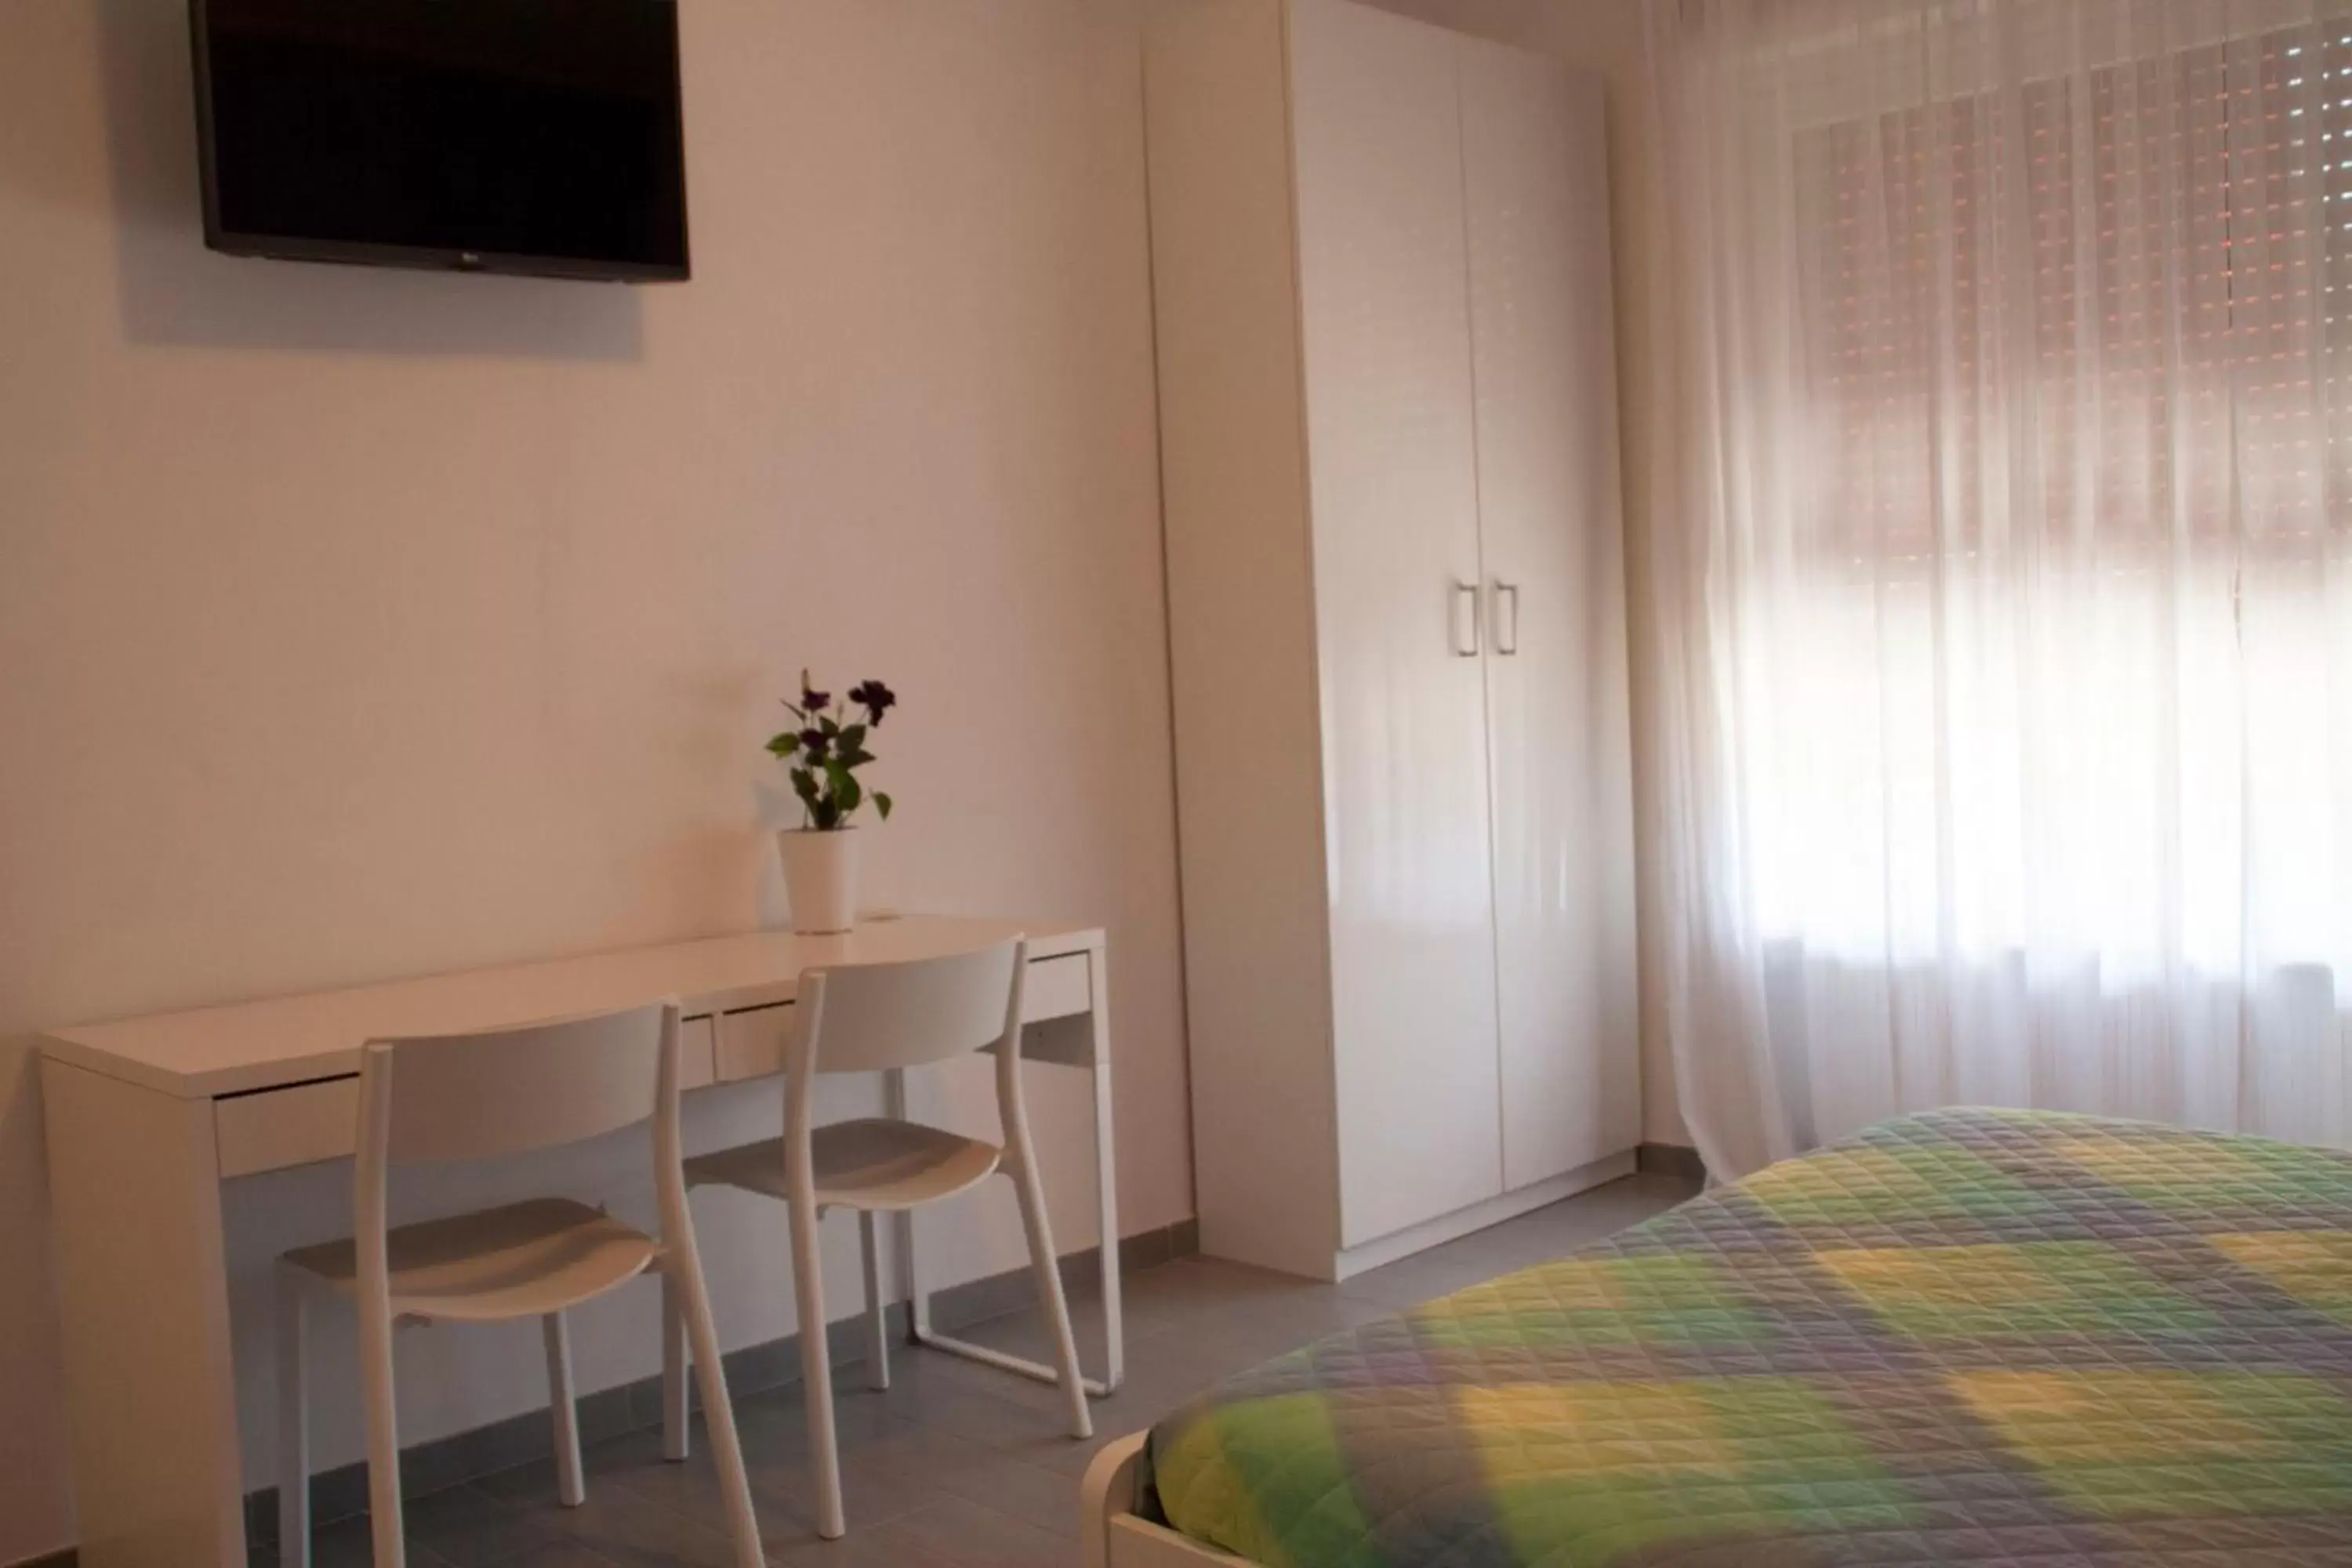 Bedroom, Room Photo in DaNoi in Trastevere